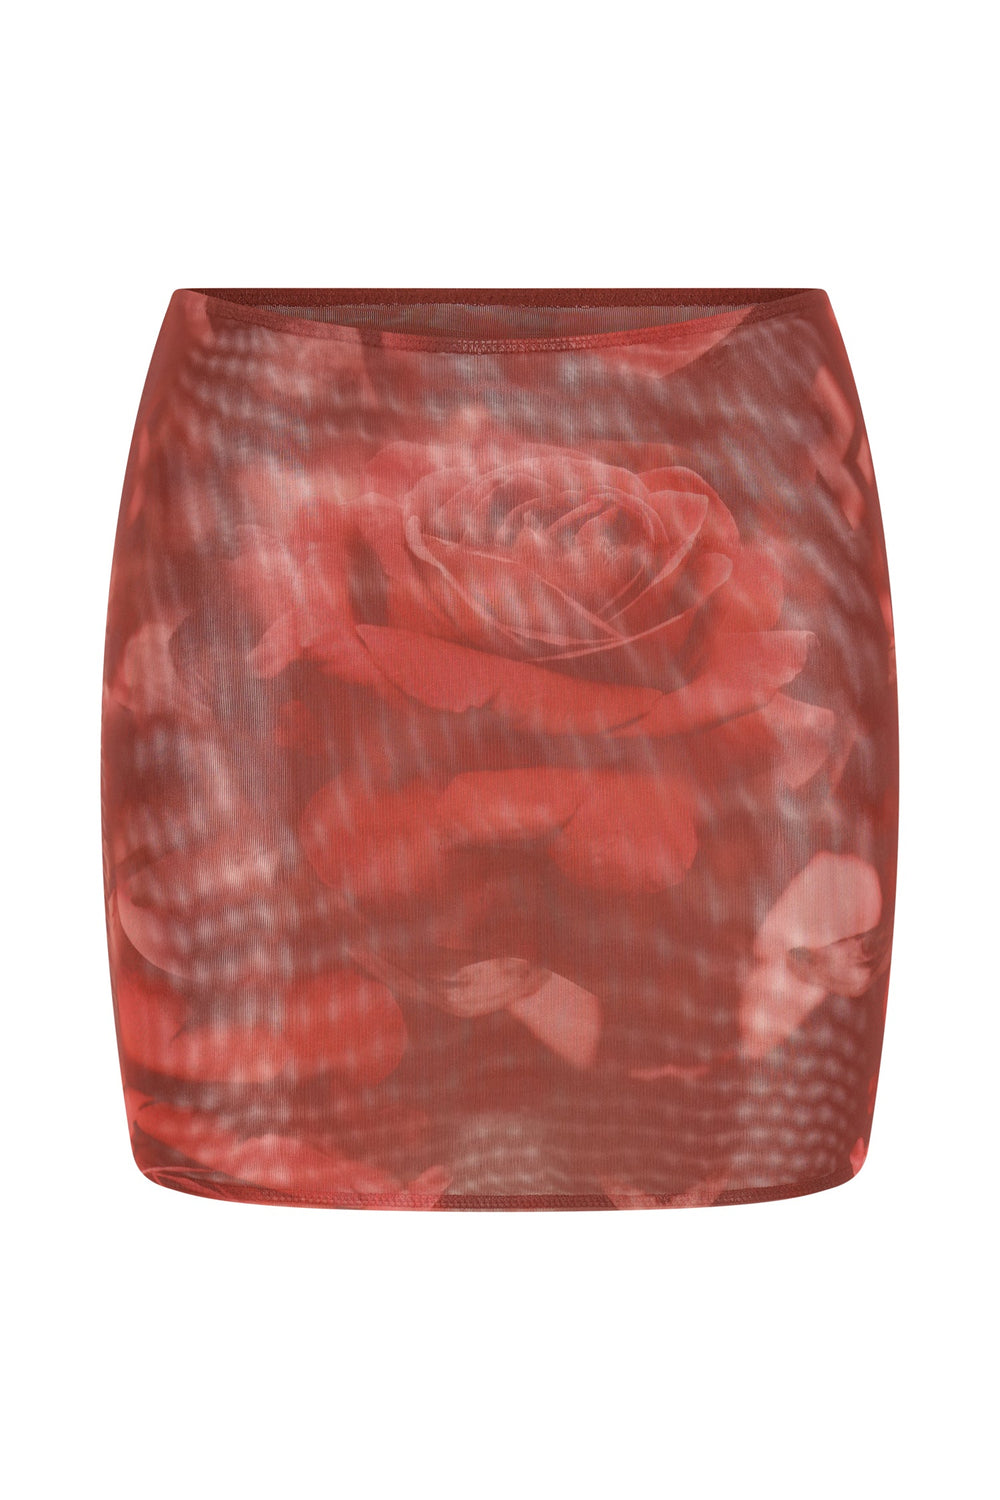 Erina Mesh Mini Skirt - Oversized Rose Print